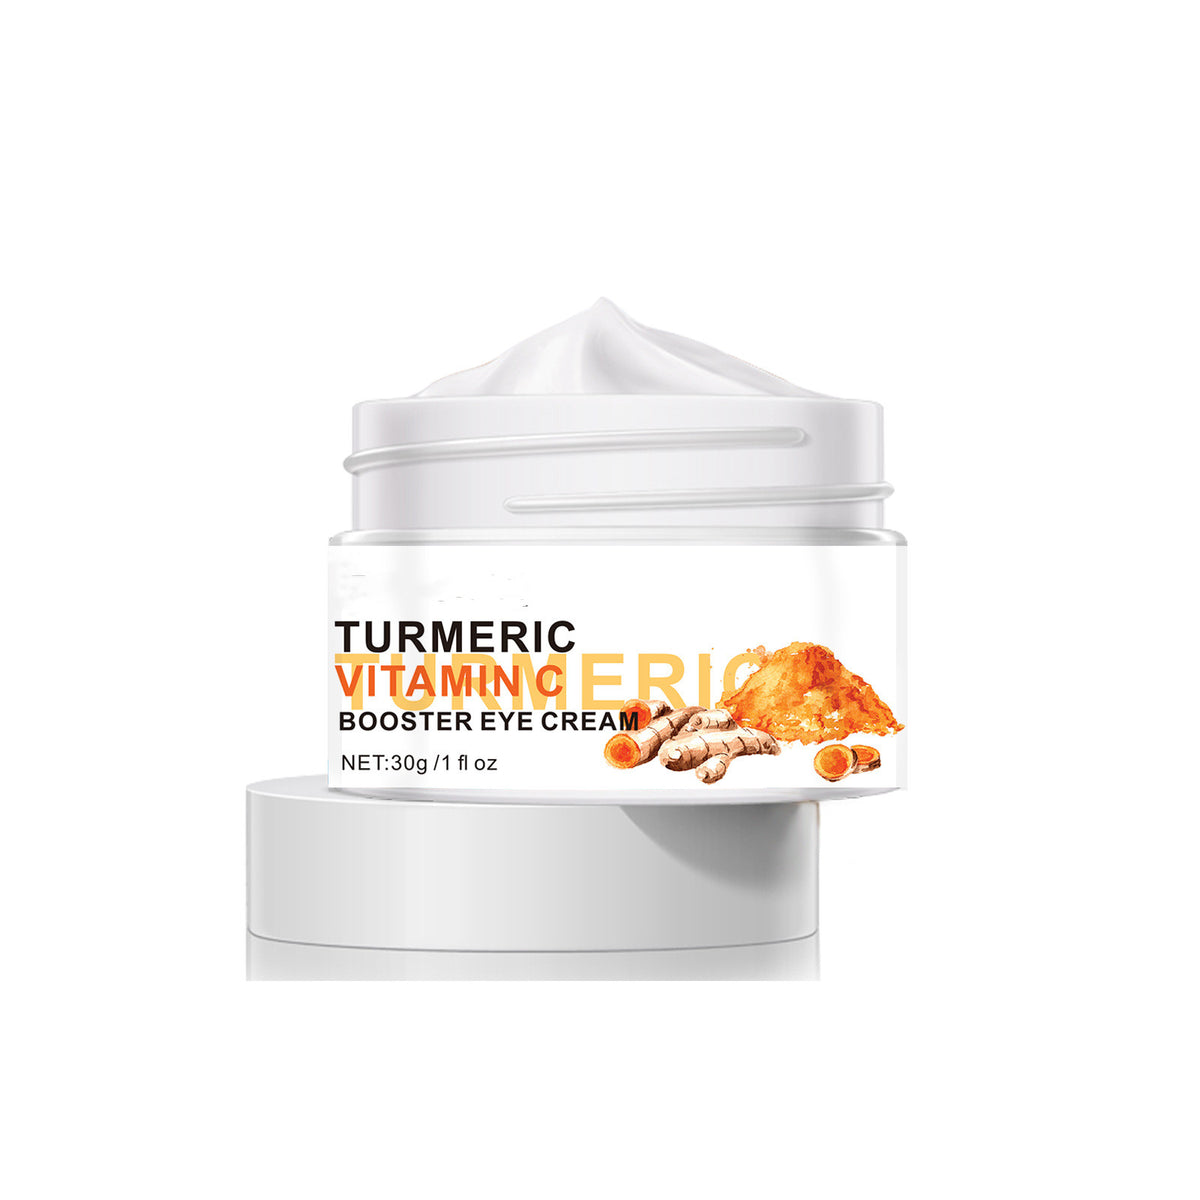 Rynkas - Turmeric Vitamin C Eye Cream Care - Rynkas